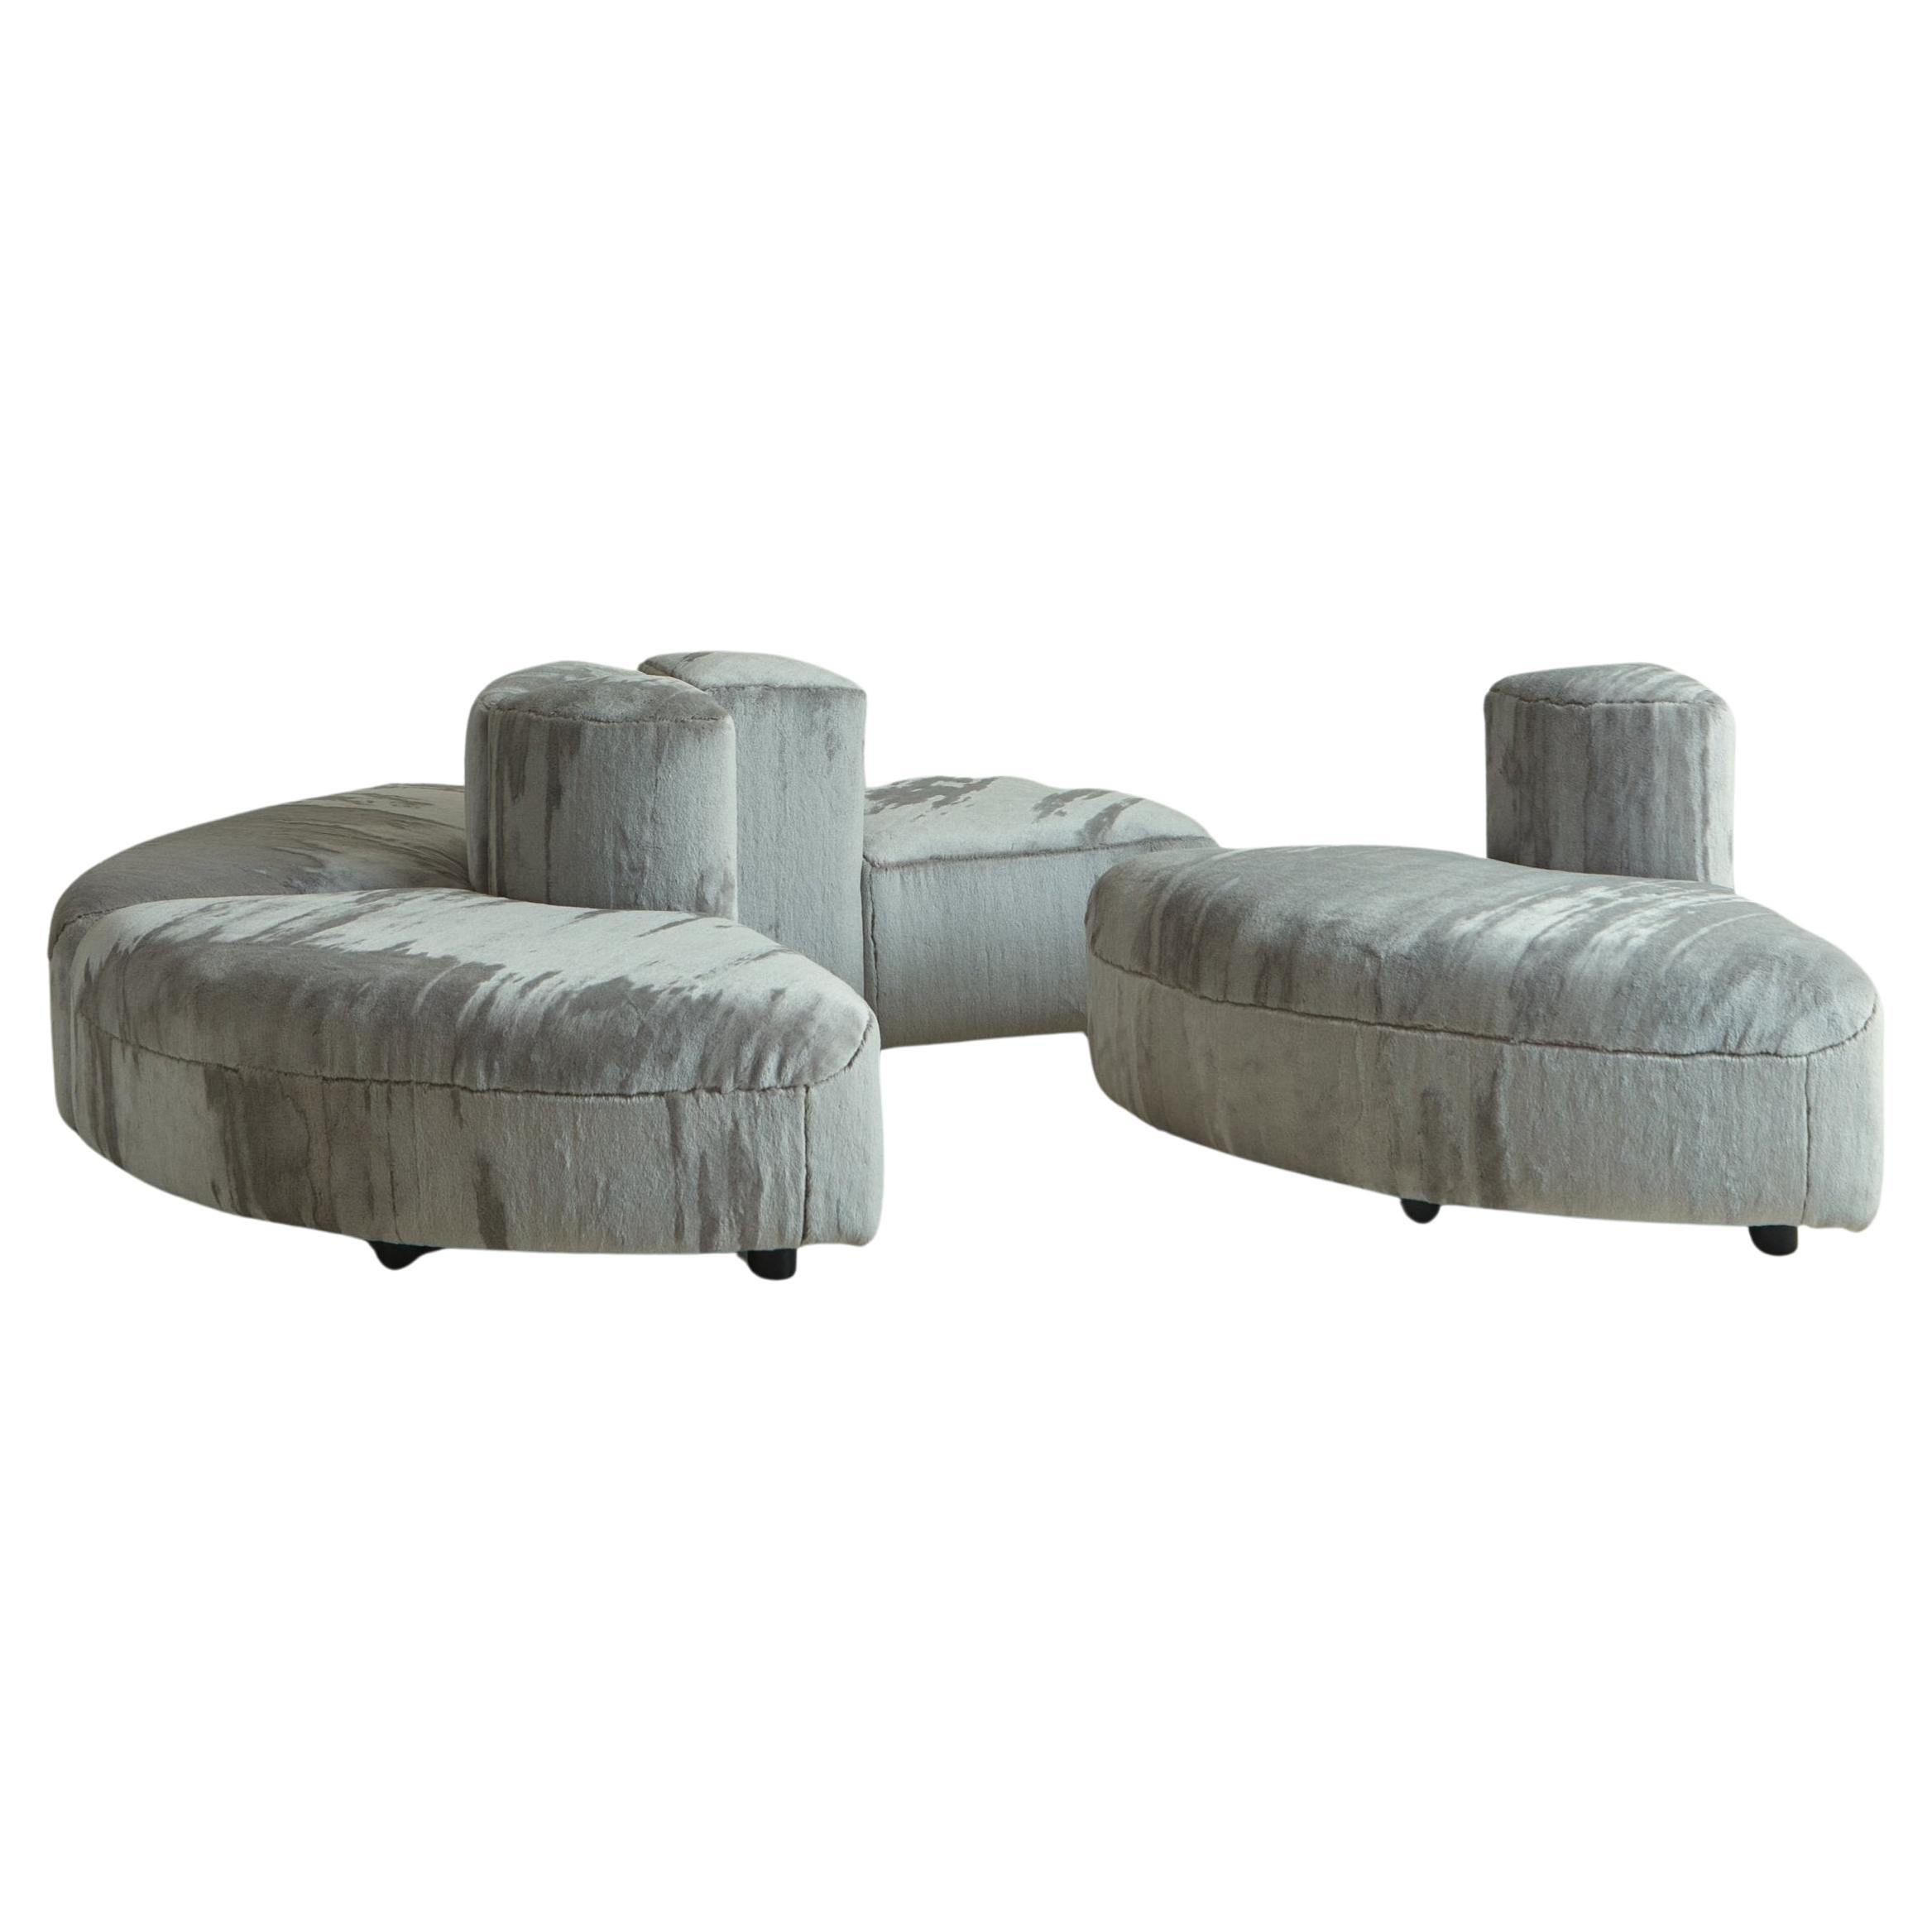 ‘Novemila 9000' Modular Sofa in Gray Striated Velvet by Tito Agnoli for Arflex